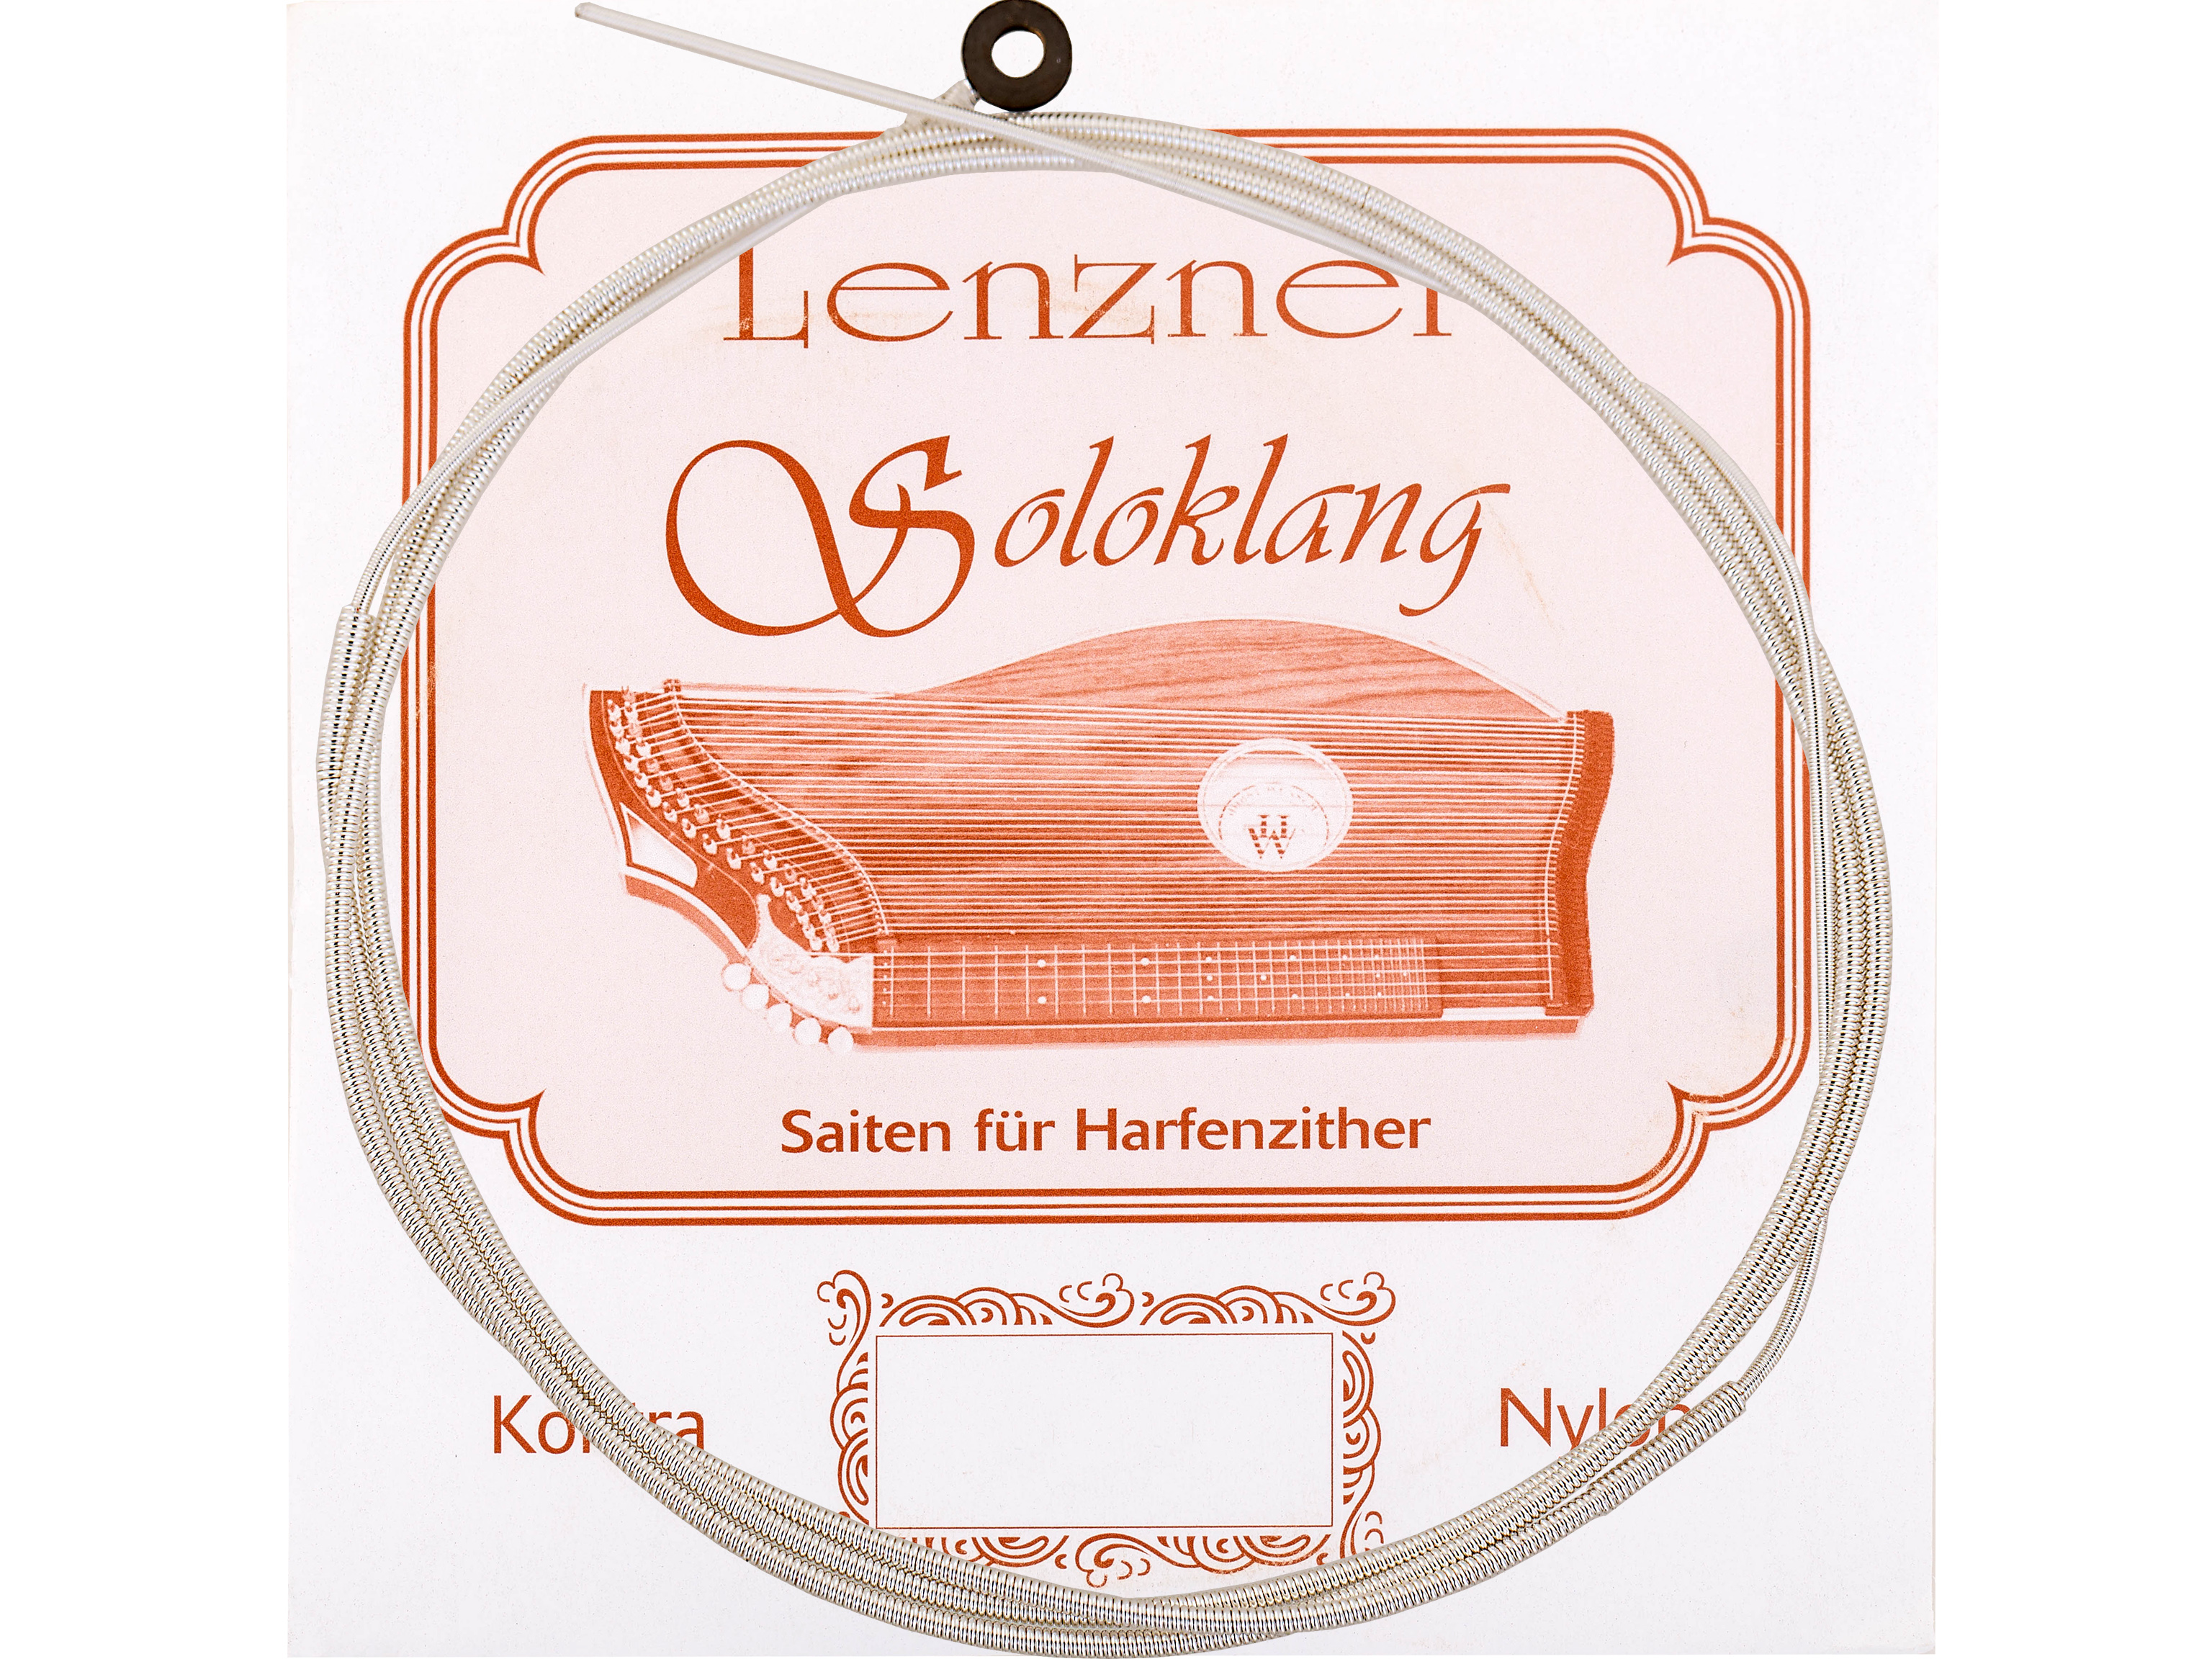 Lenzner 5500-38 Zithersaitensatz Soloklang